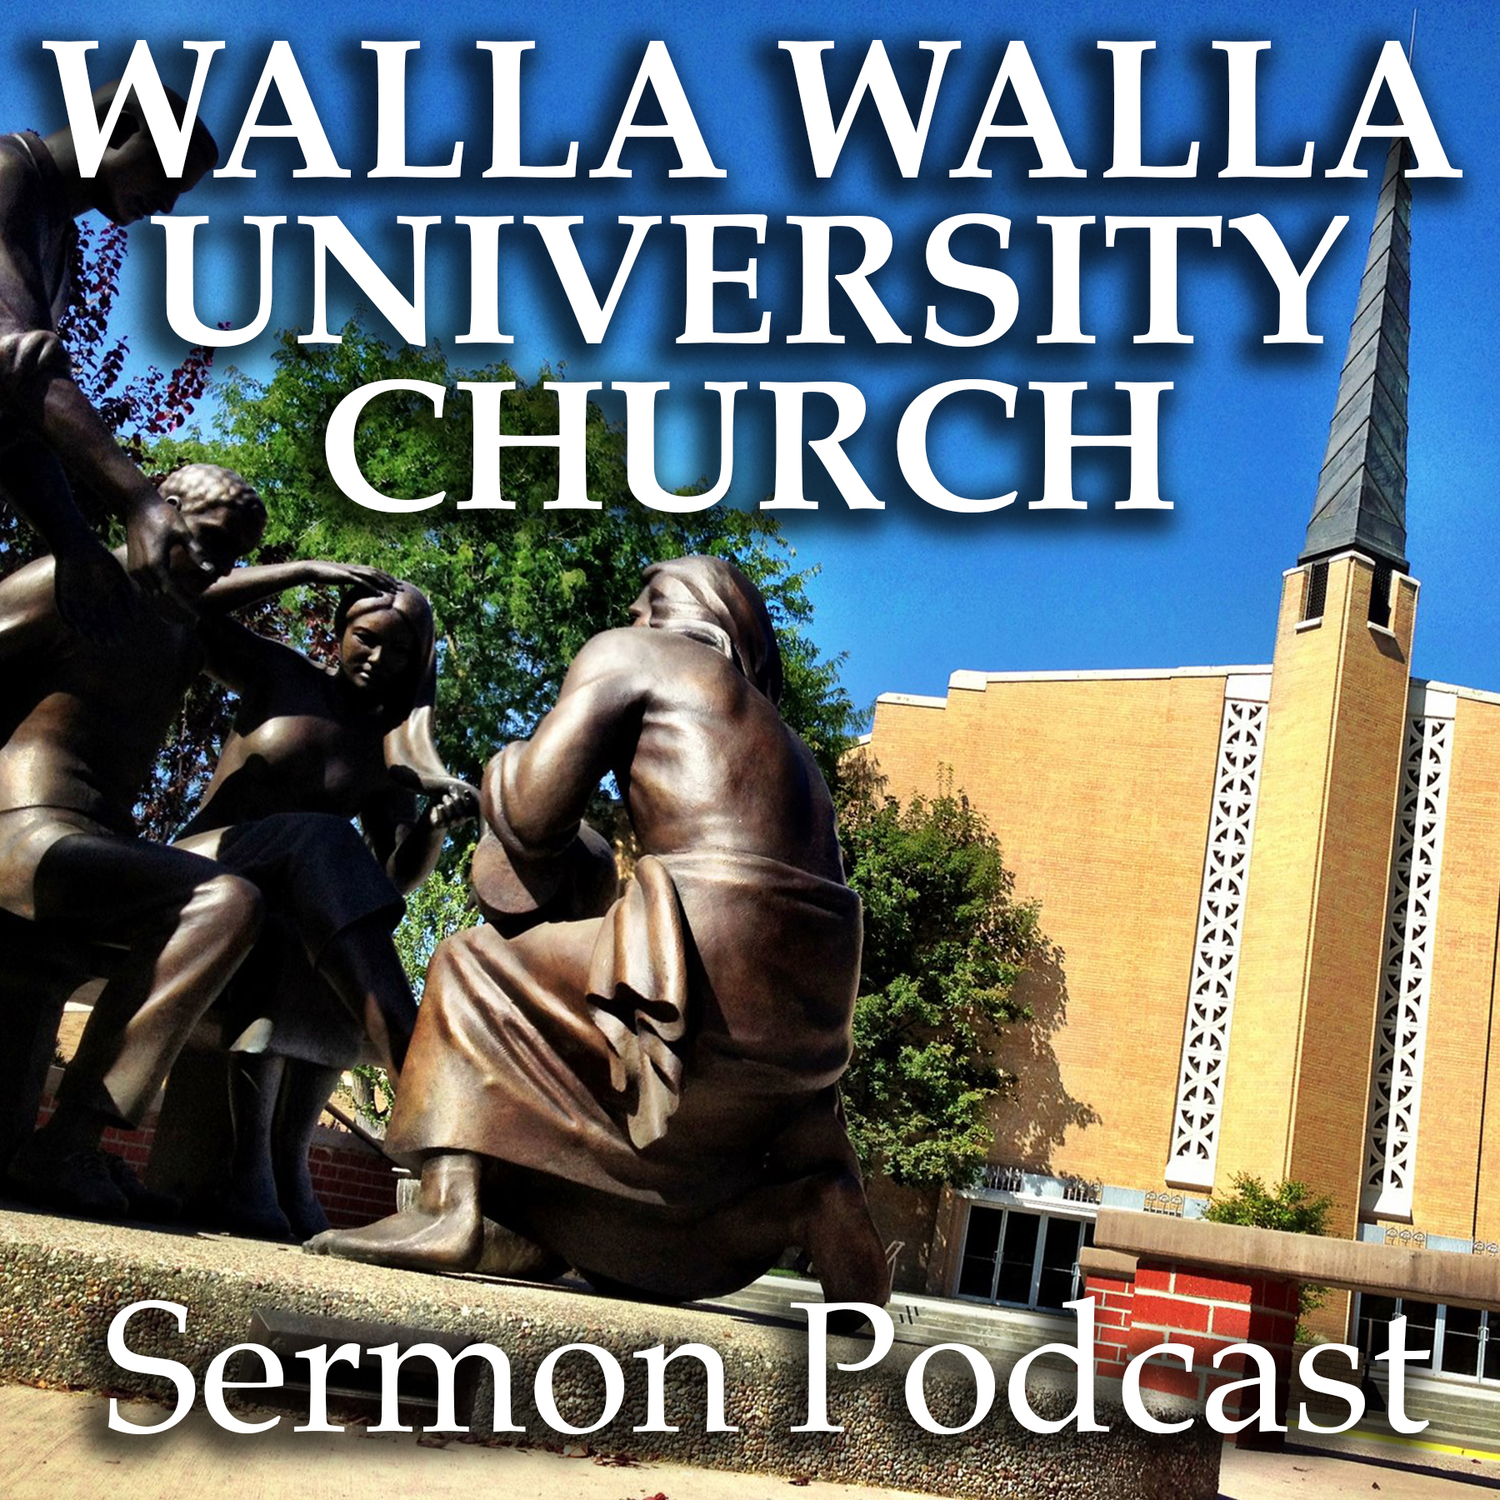 Sermon Podcast - Walla Walla University Church